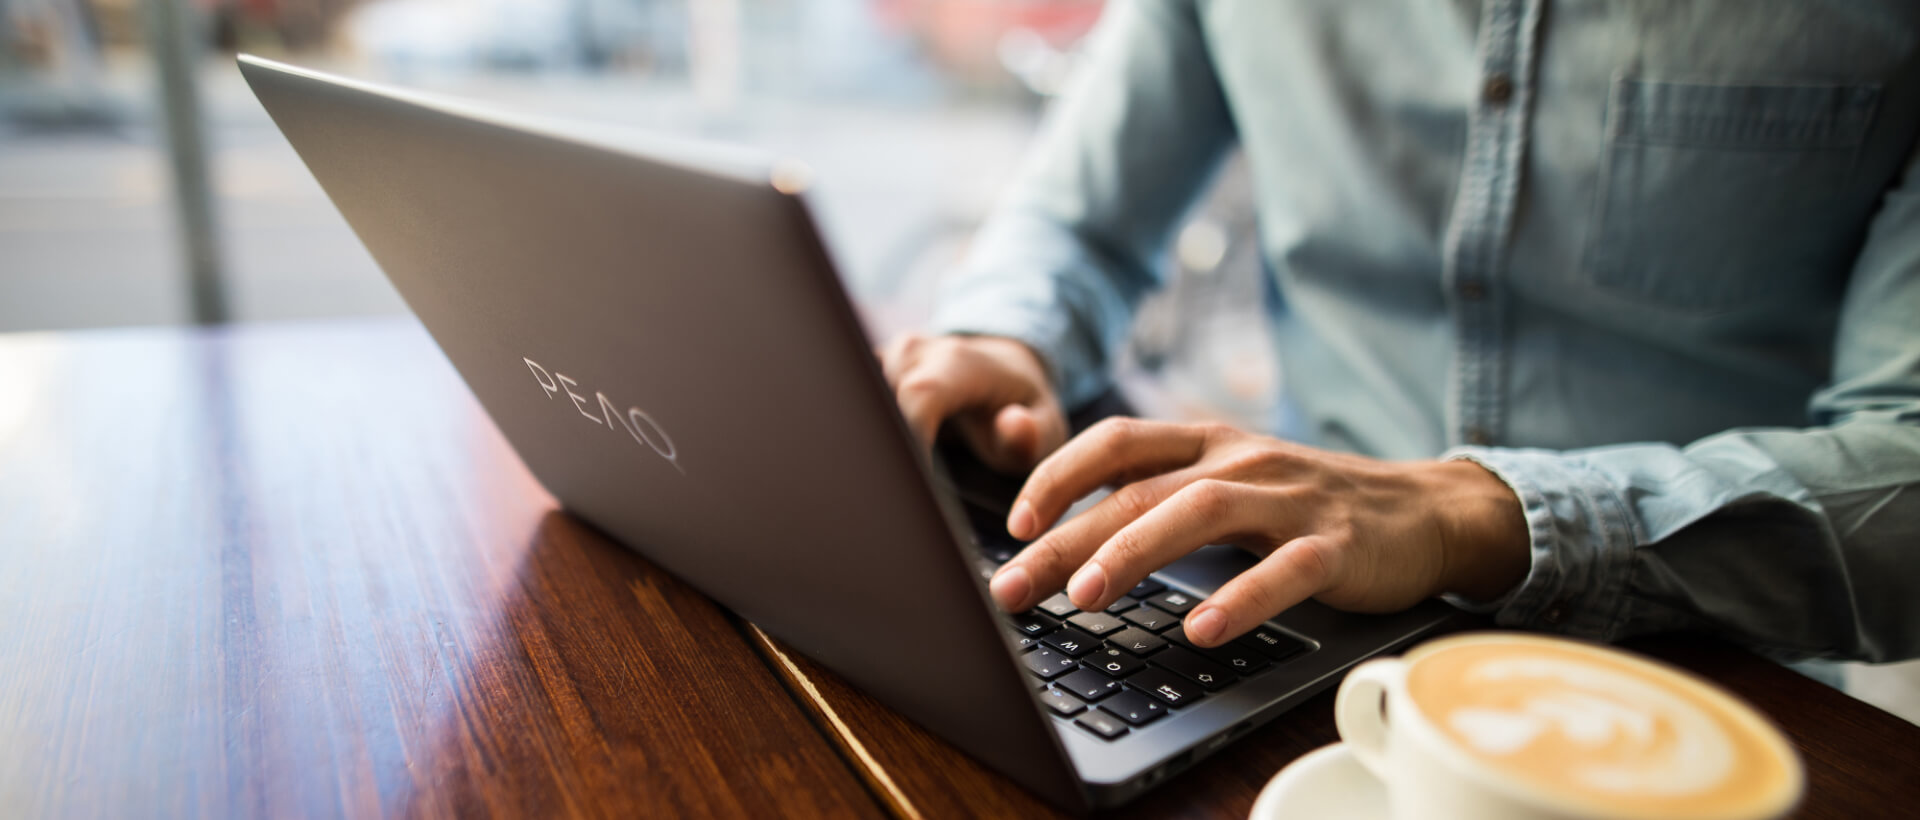 Młody mężczyzna pisze na laptopie PEAQ, obok pełna filiżanka kawy, siedzi w kawiarni, zbliżenie, panorama